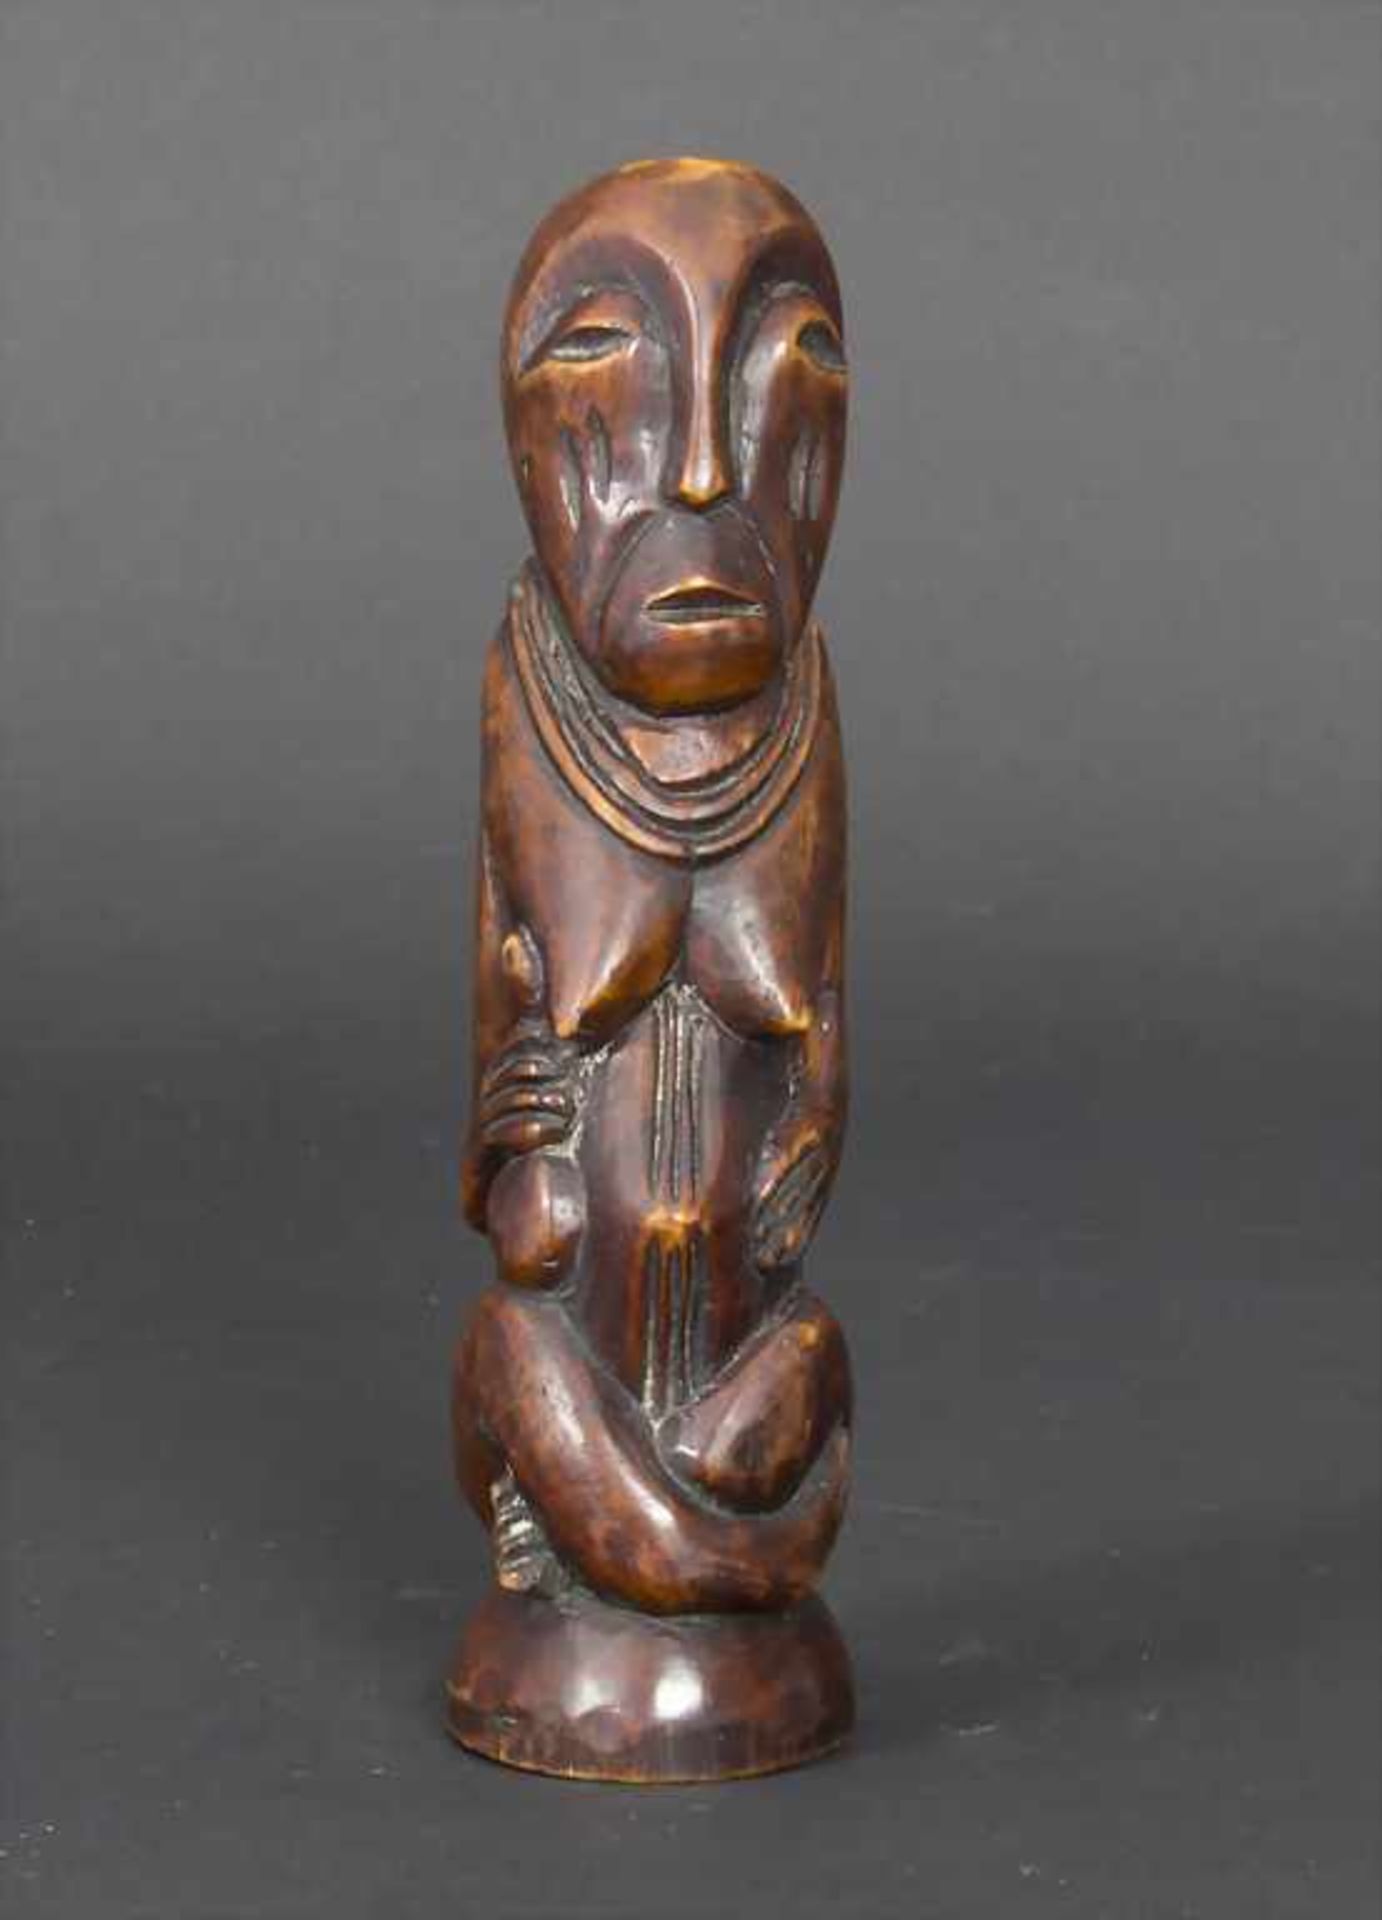 Elfenbein Statuette der Lega, Nordkongo, um 1930Material: Elfenbein braun patiniert,Stamm der Lega- - Bild 3 aus 4